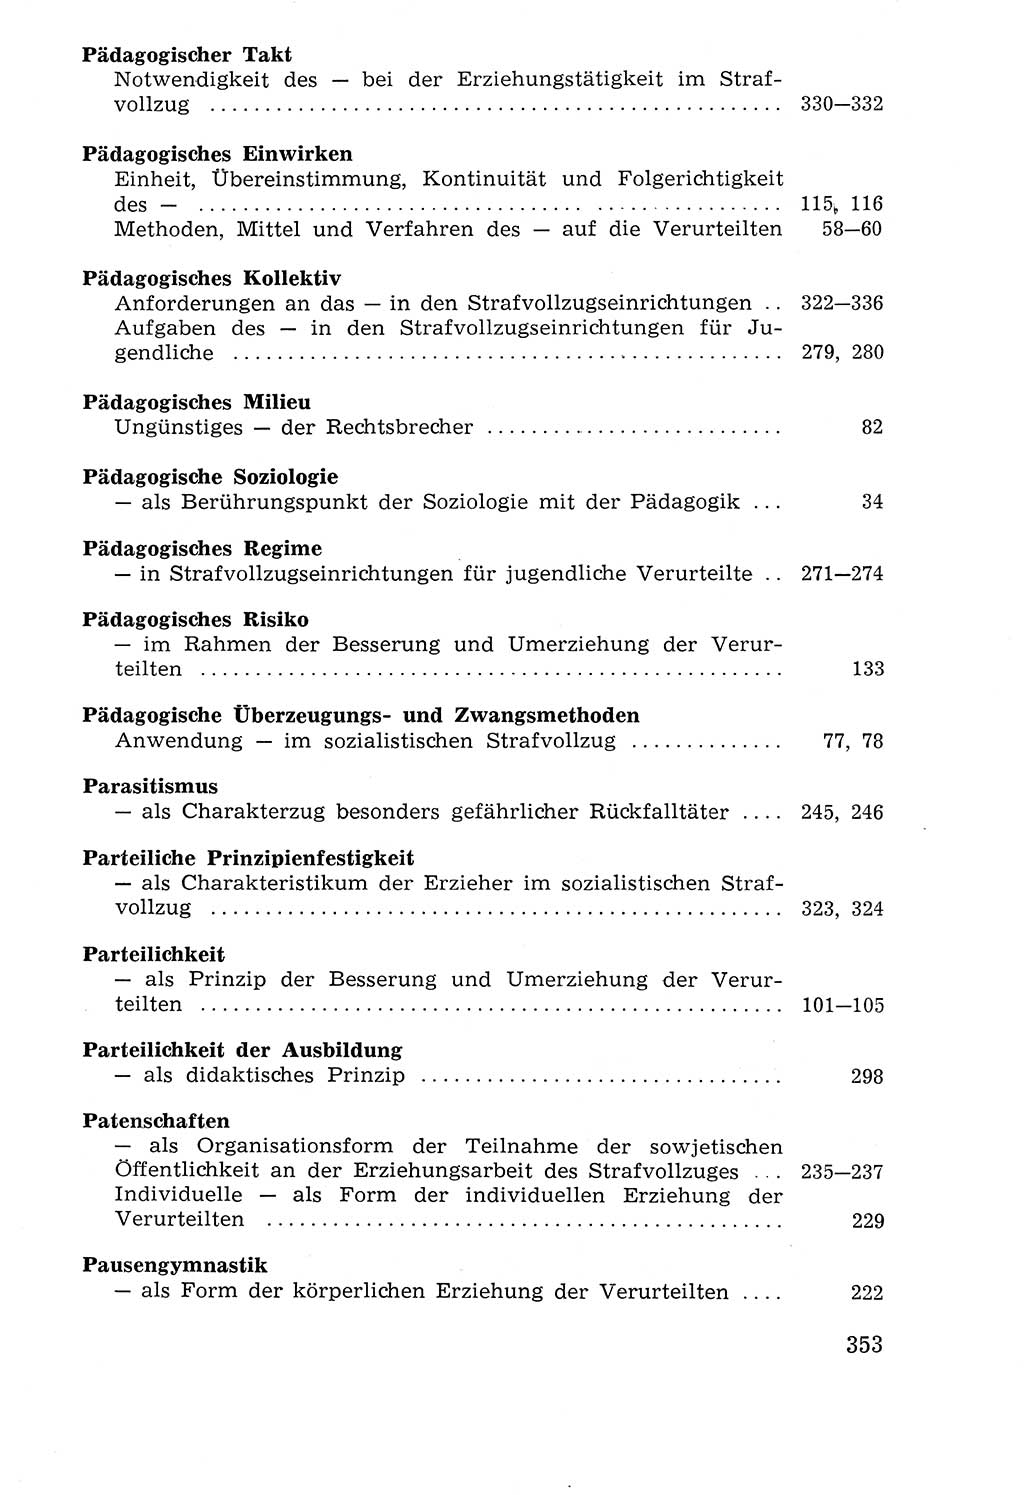 Lehrbuch der Strafvollzugspädagogik [Deutsche Demokratische Republik (DDR)] 1969, Seite 353 (Lb. SV-Pd. DDR 1969, S. 353)